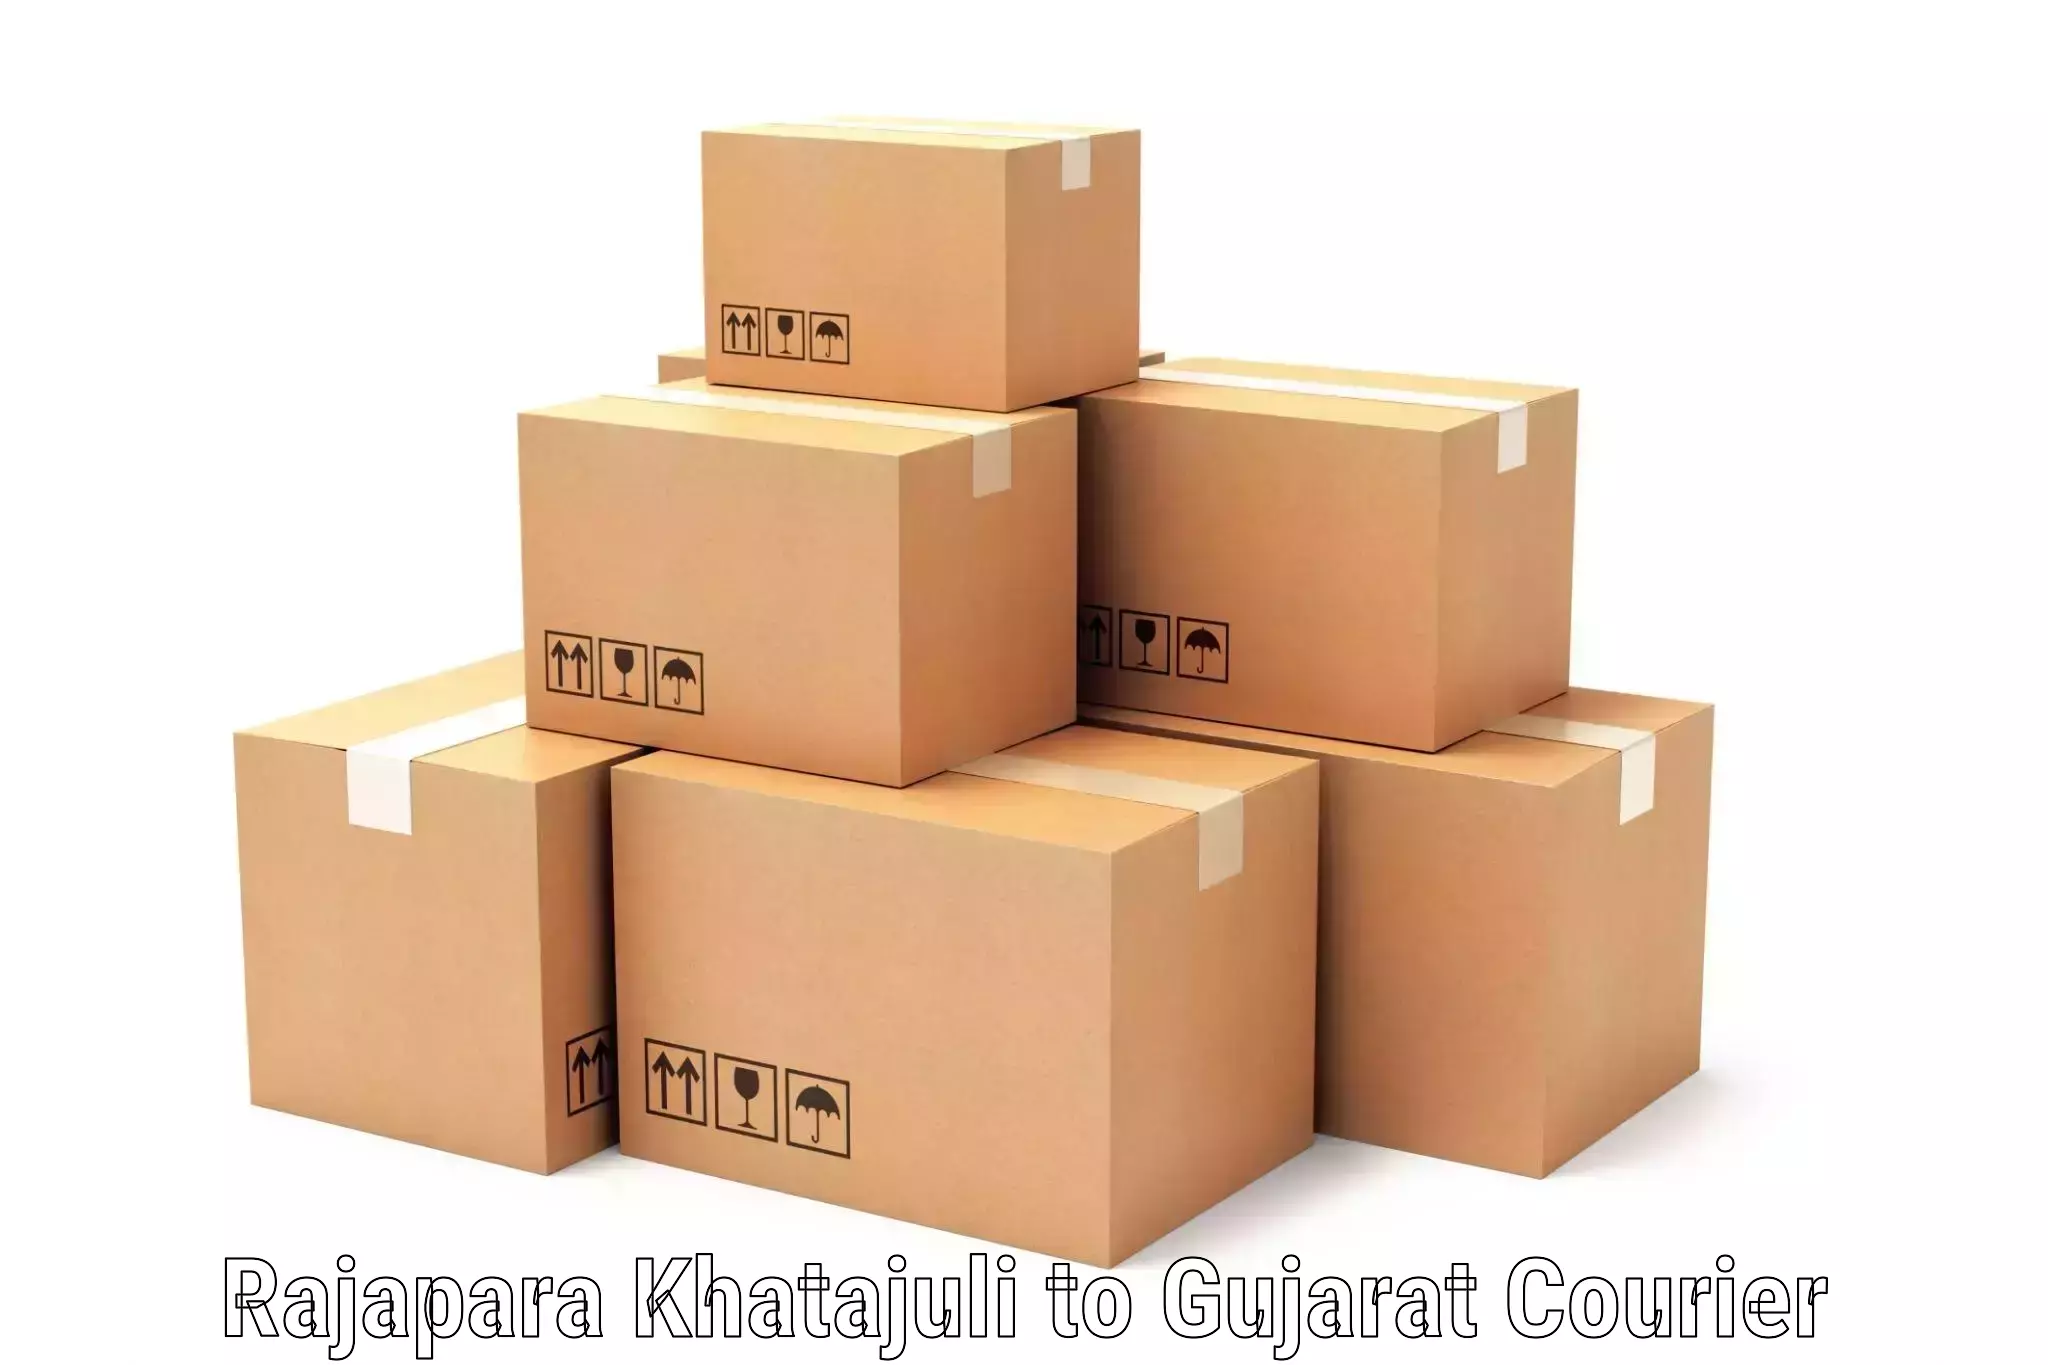 High-capacity courier solutions Rajapara Khatajuli to Gujarat